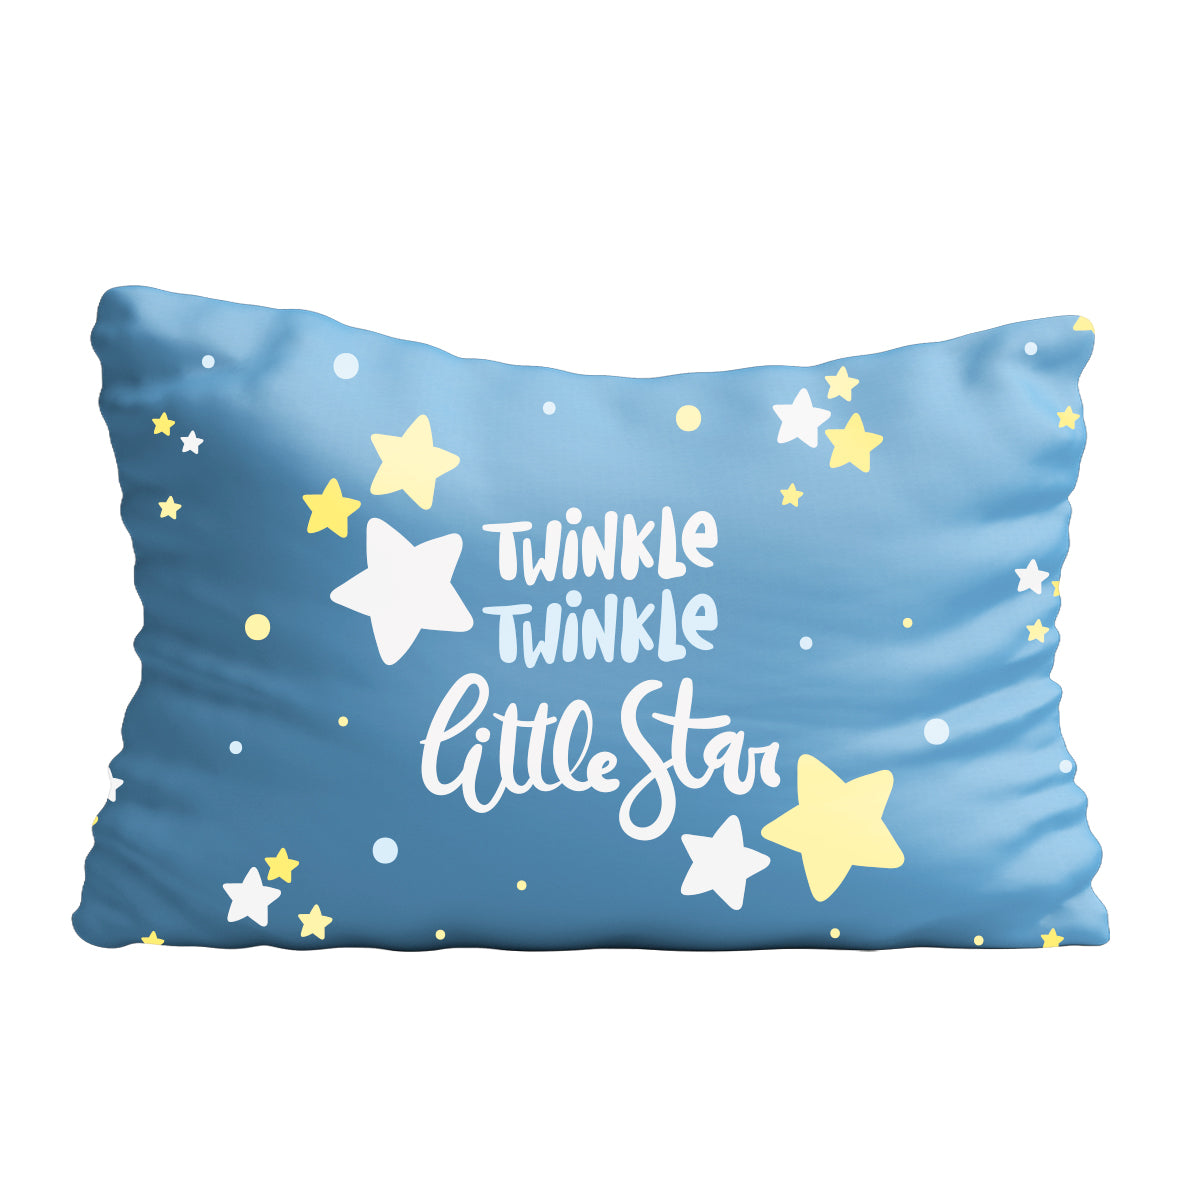 Twimkle twimkle little star blue pillow case - Wimziy&Co.